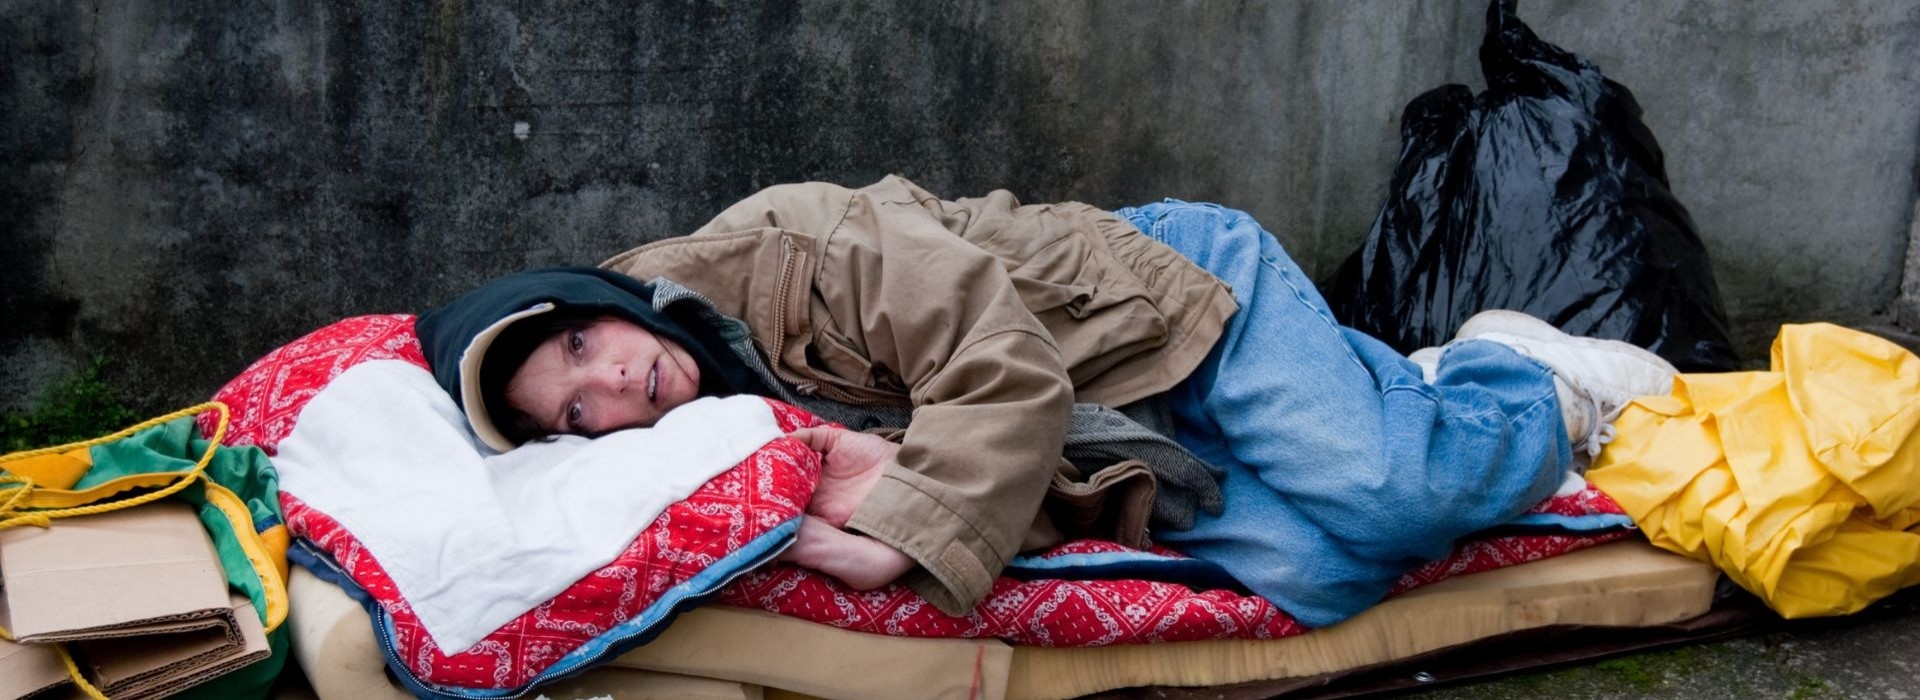 Kryzys bezdomności dotyka także młodych ludzi